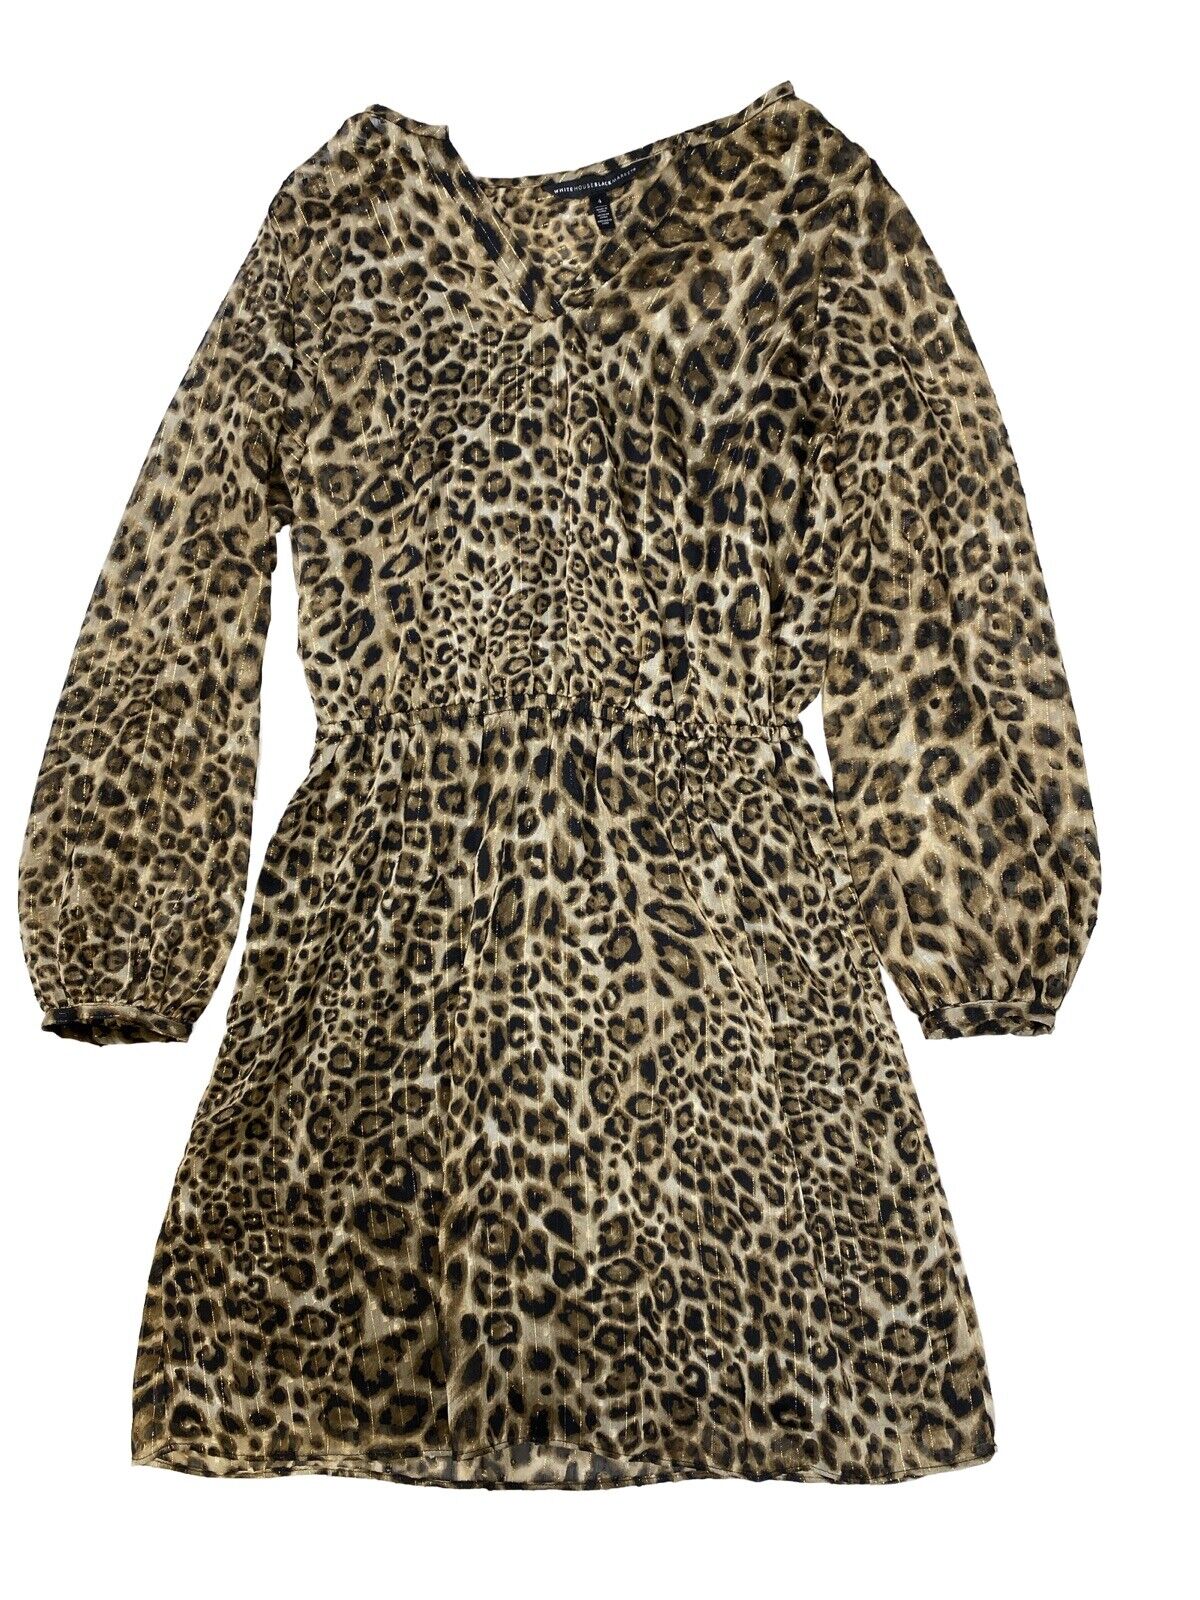 White House Black Market Vestido tipo blusón con estampado de leopardo marrón para mujer - 4